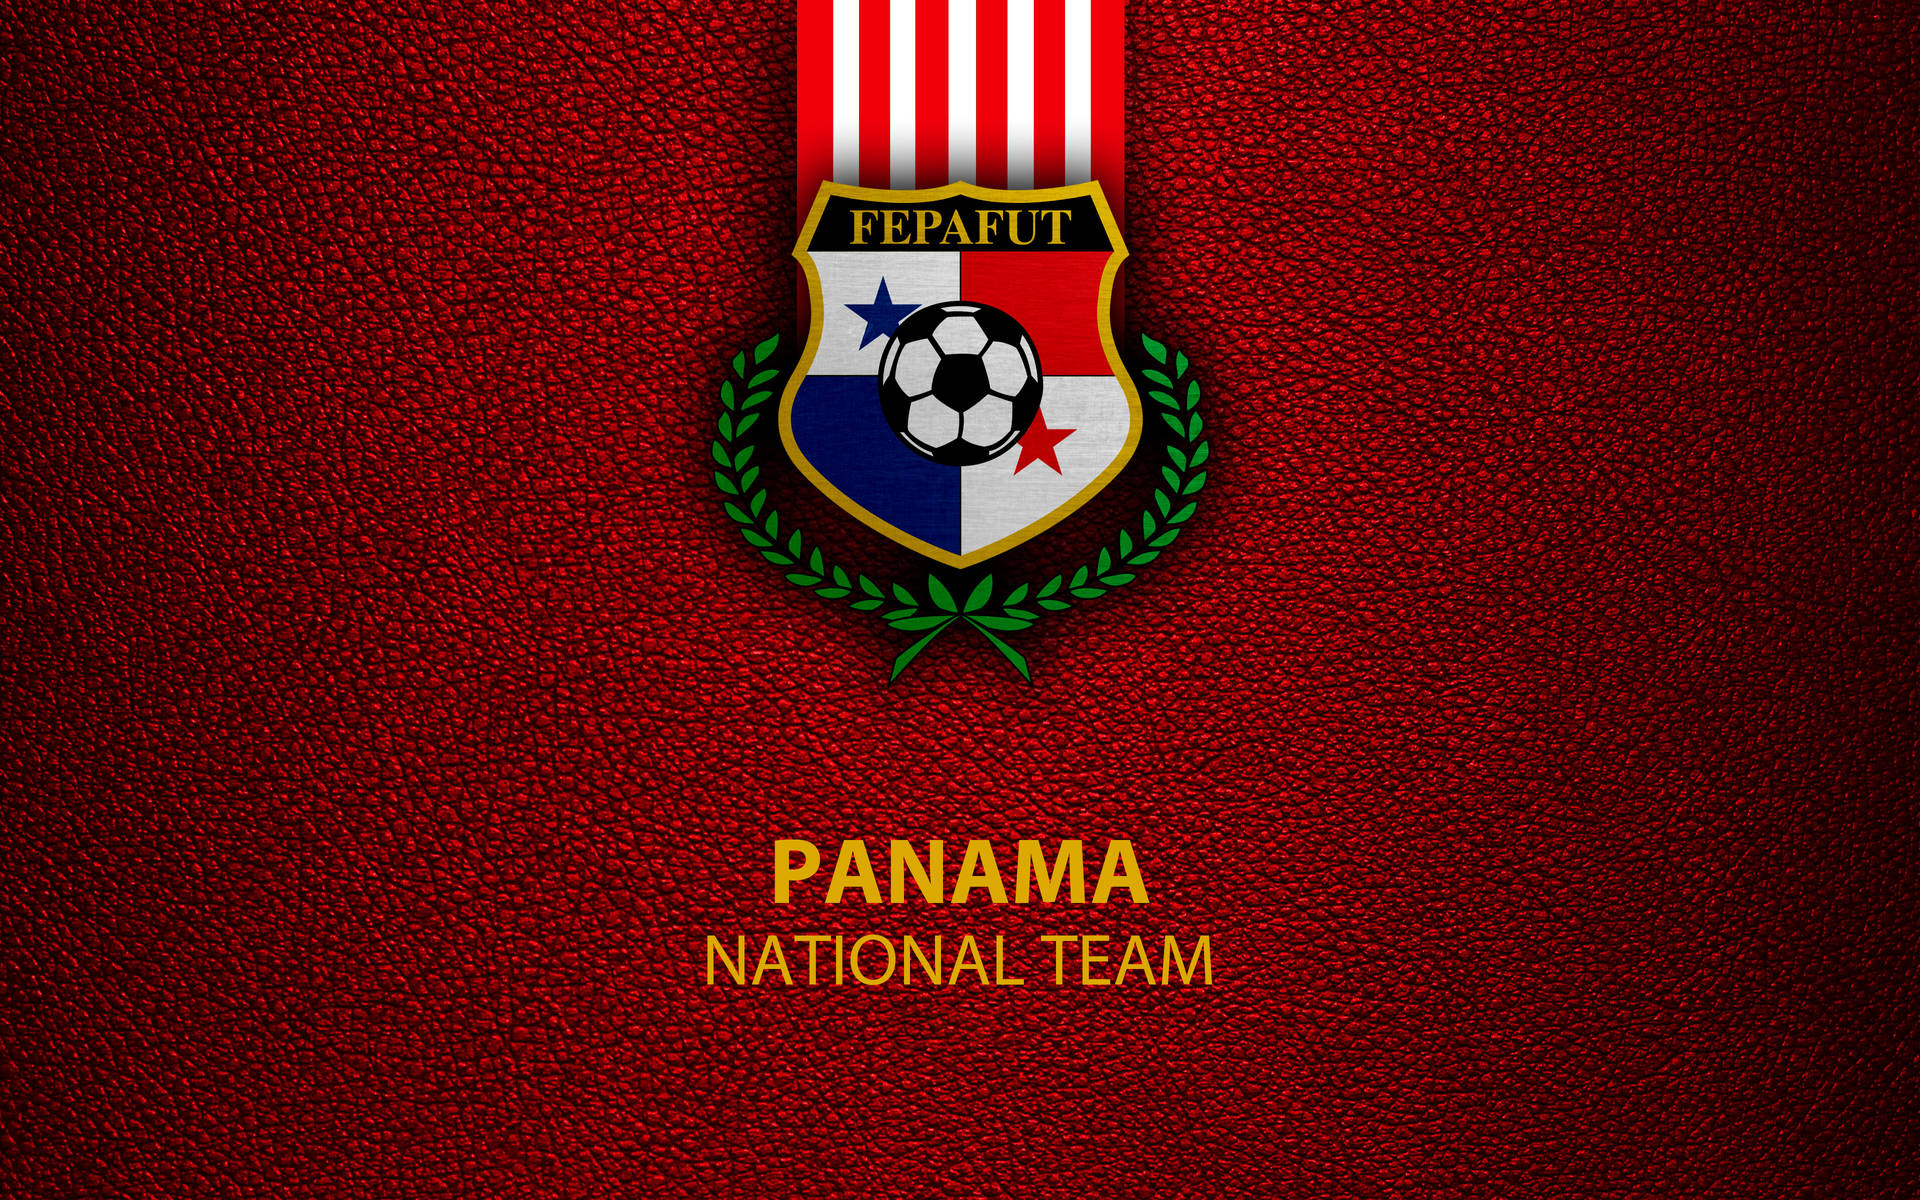 Panama National Team Background